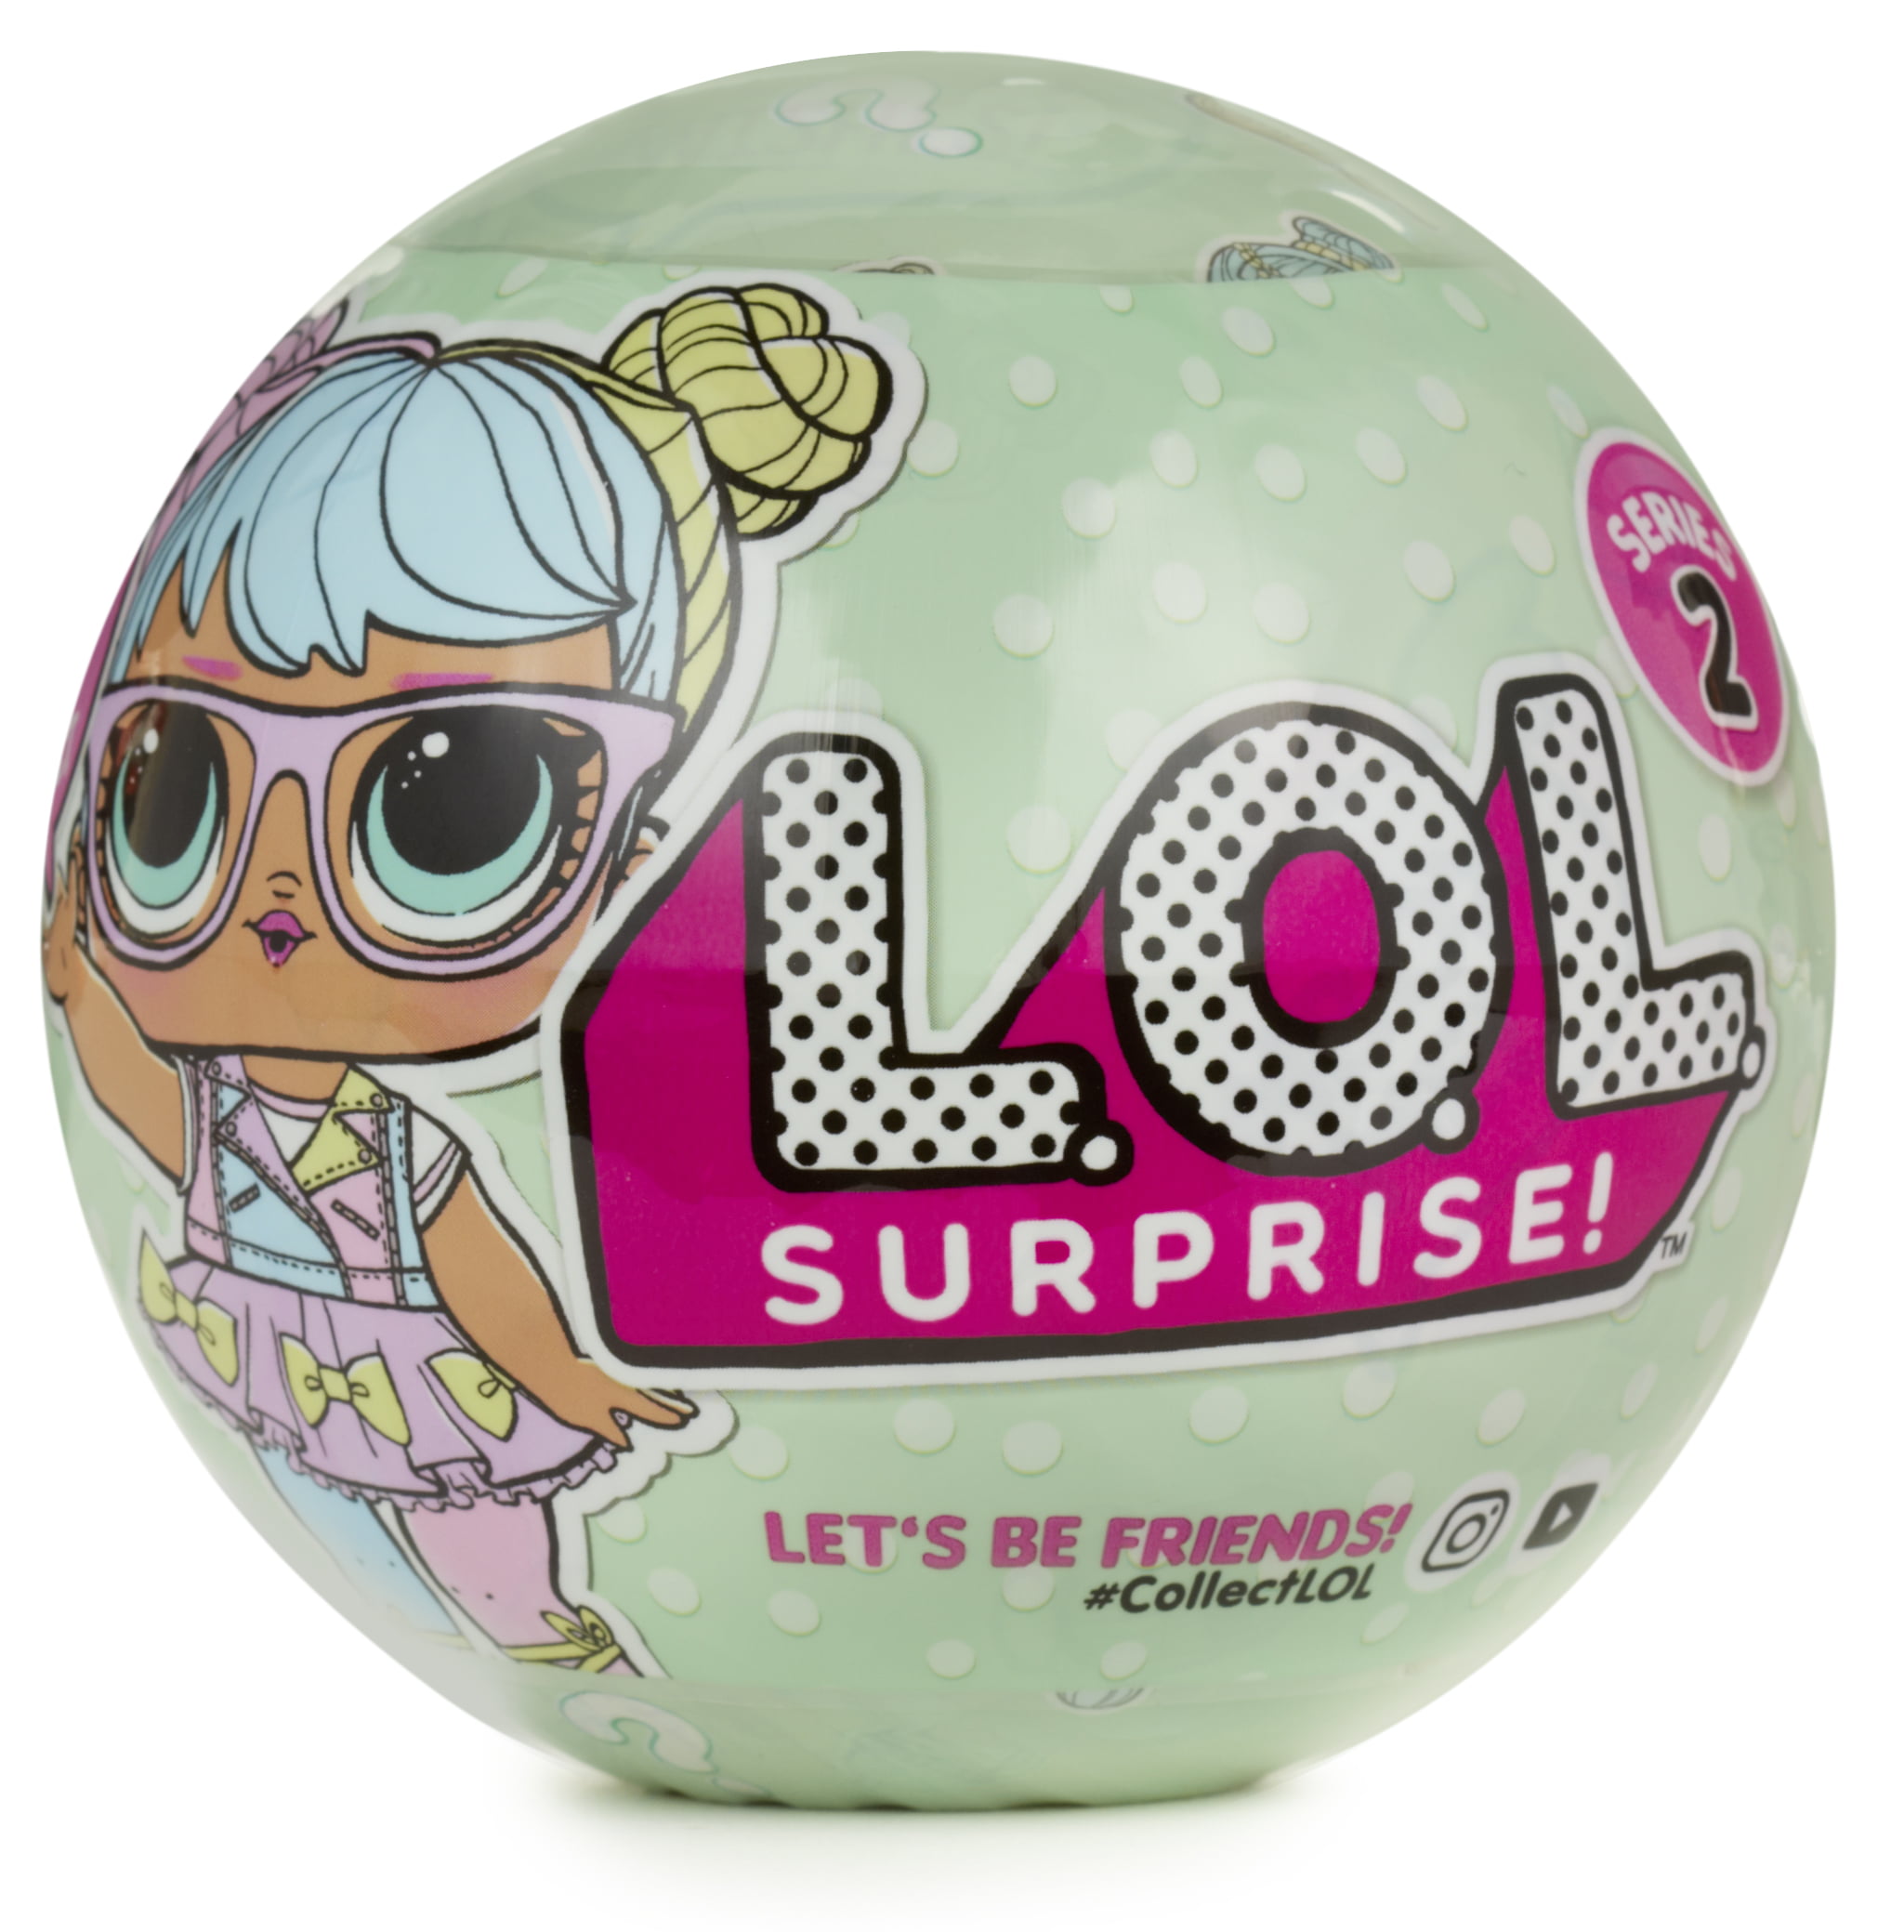 L.O.L. Surprise Tots Ball-2-2A - Walmart.com